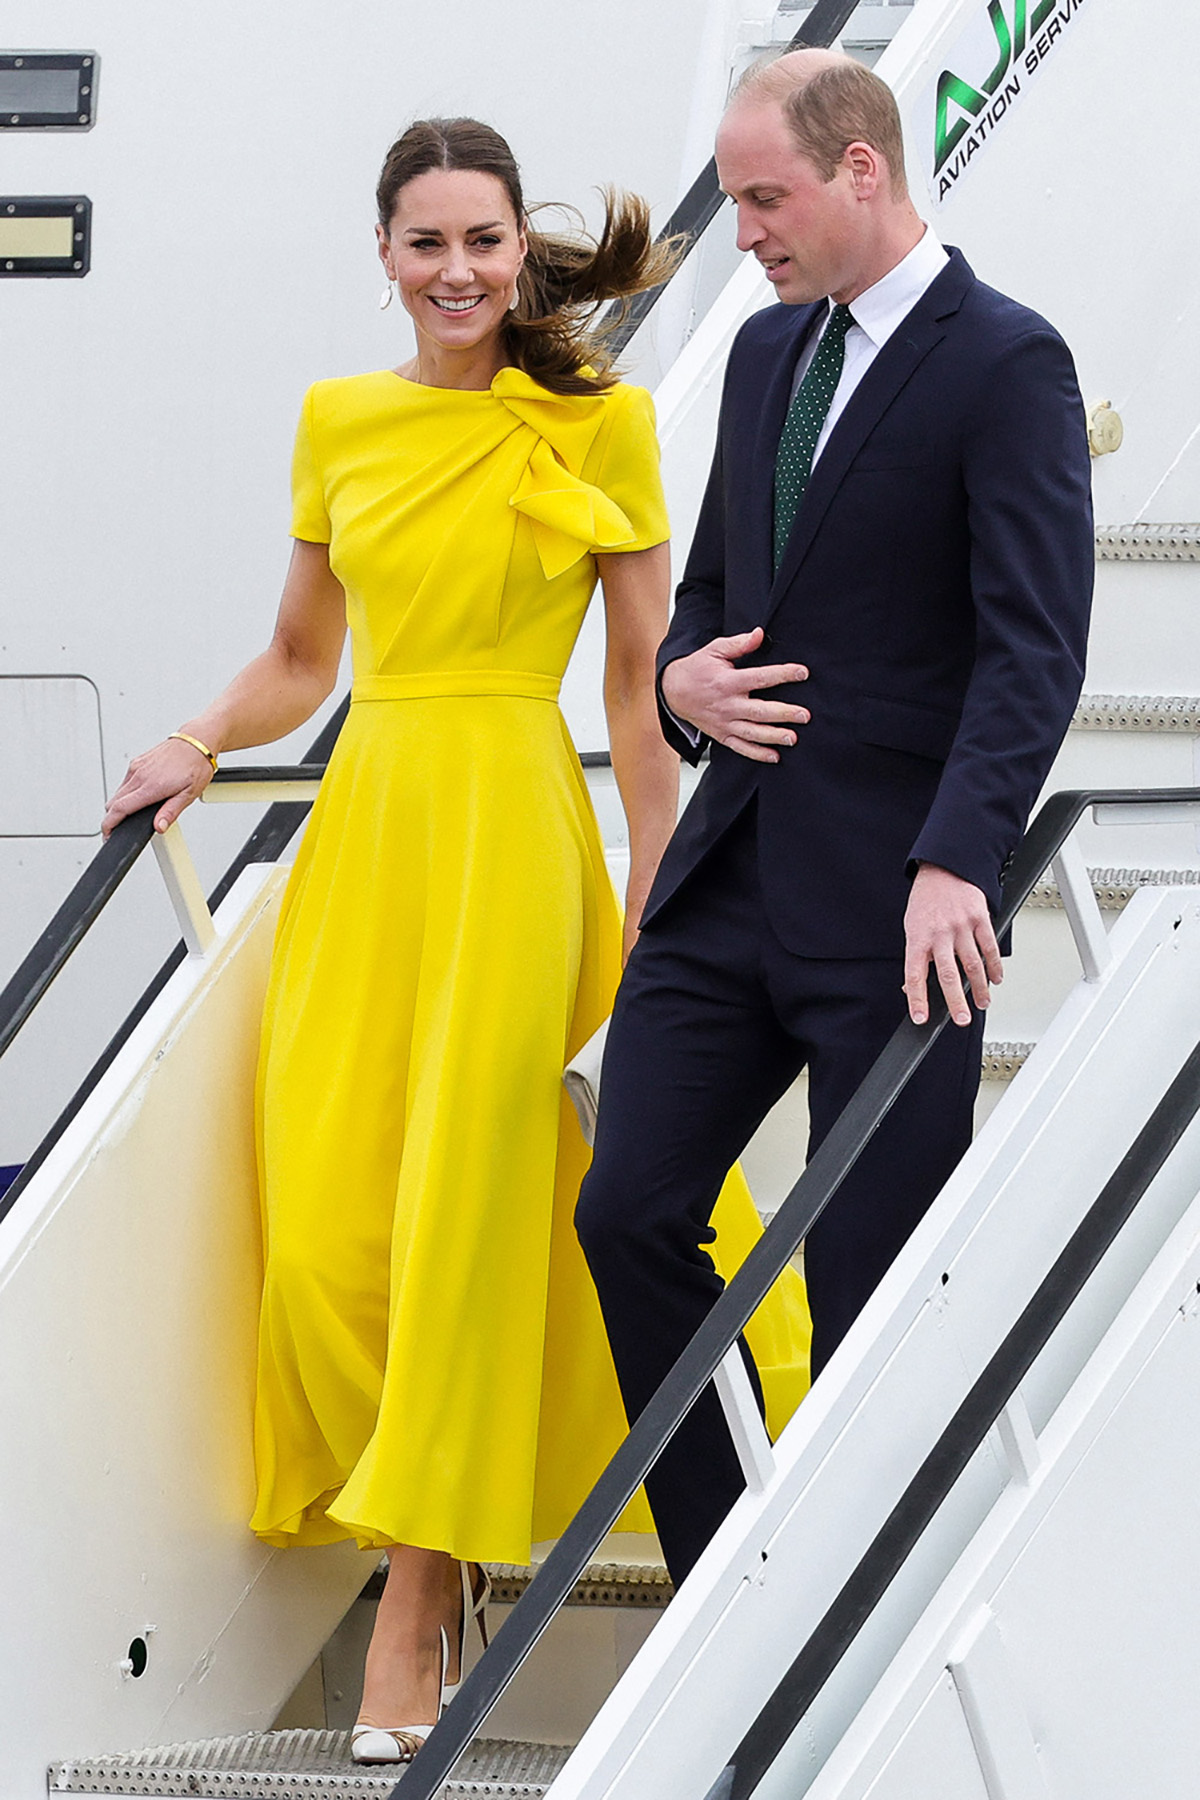  Кейт Миддлтон в жёлтом платье вместе с принцем Уильямом приземлились на Ямайке